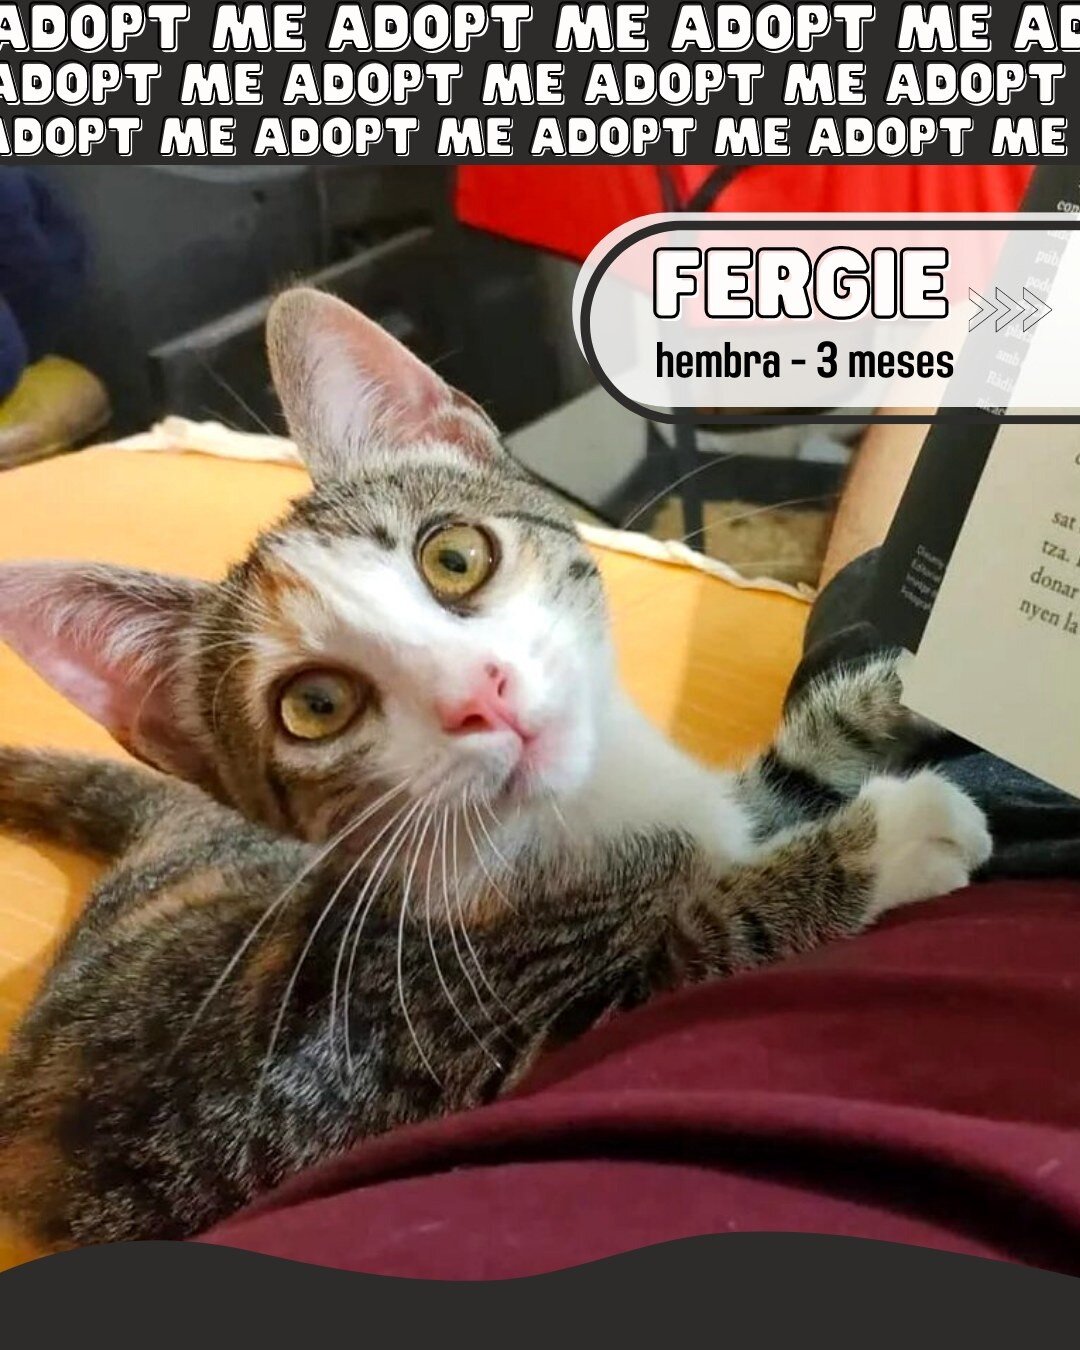 Fergie es nuestra gatita guerrera 🐱 &iquest;te imaginas lo que es operarse siendo solo un beb&eacute;? Fergie tiene muchas ganas de vivir y sabemos que tiene mucho amor para dar a su familia. 🧡

Puedes encontrar la descripci&oacute;n completa sobre